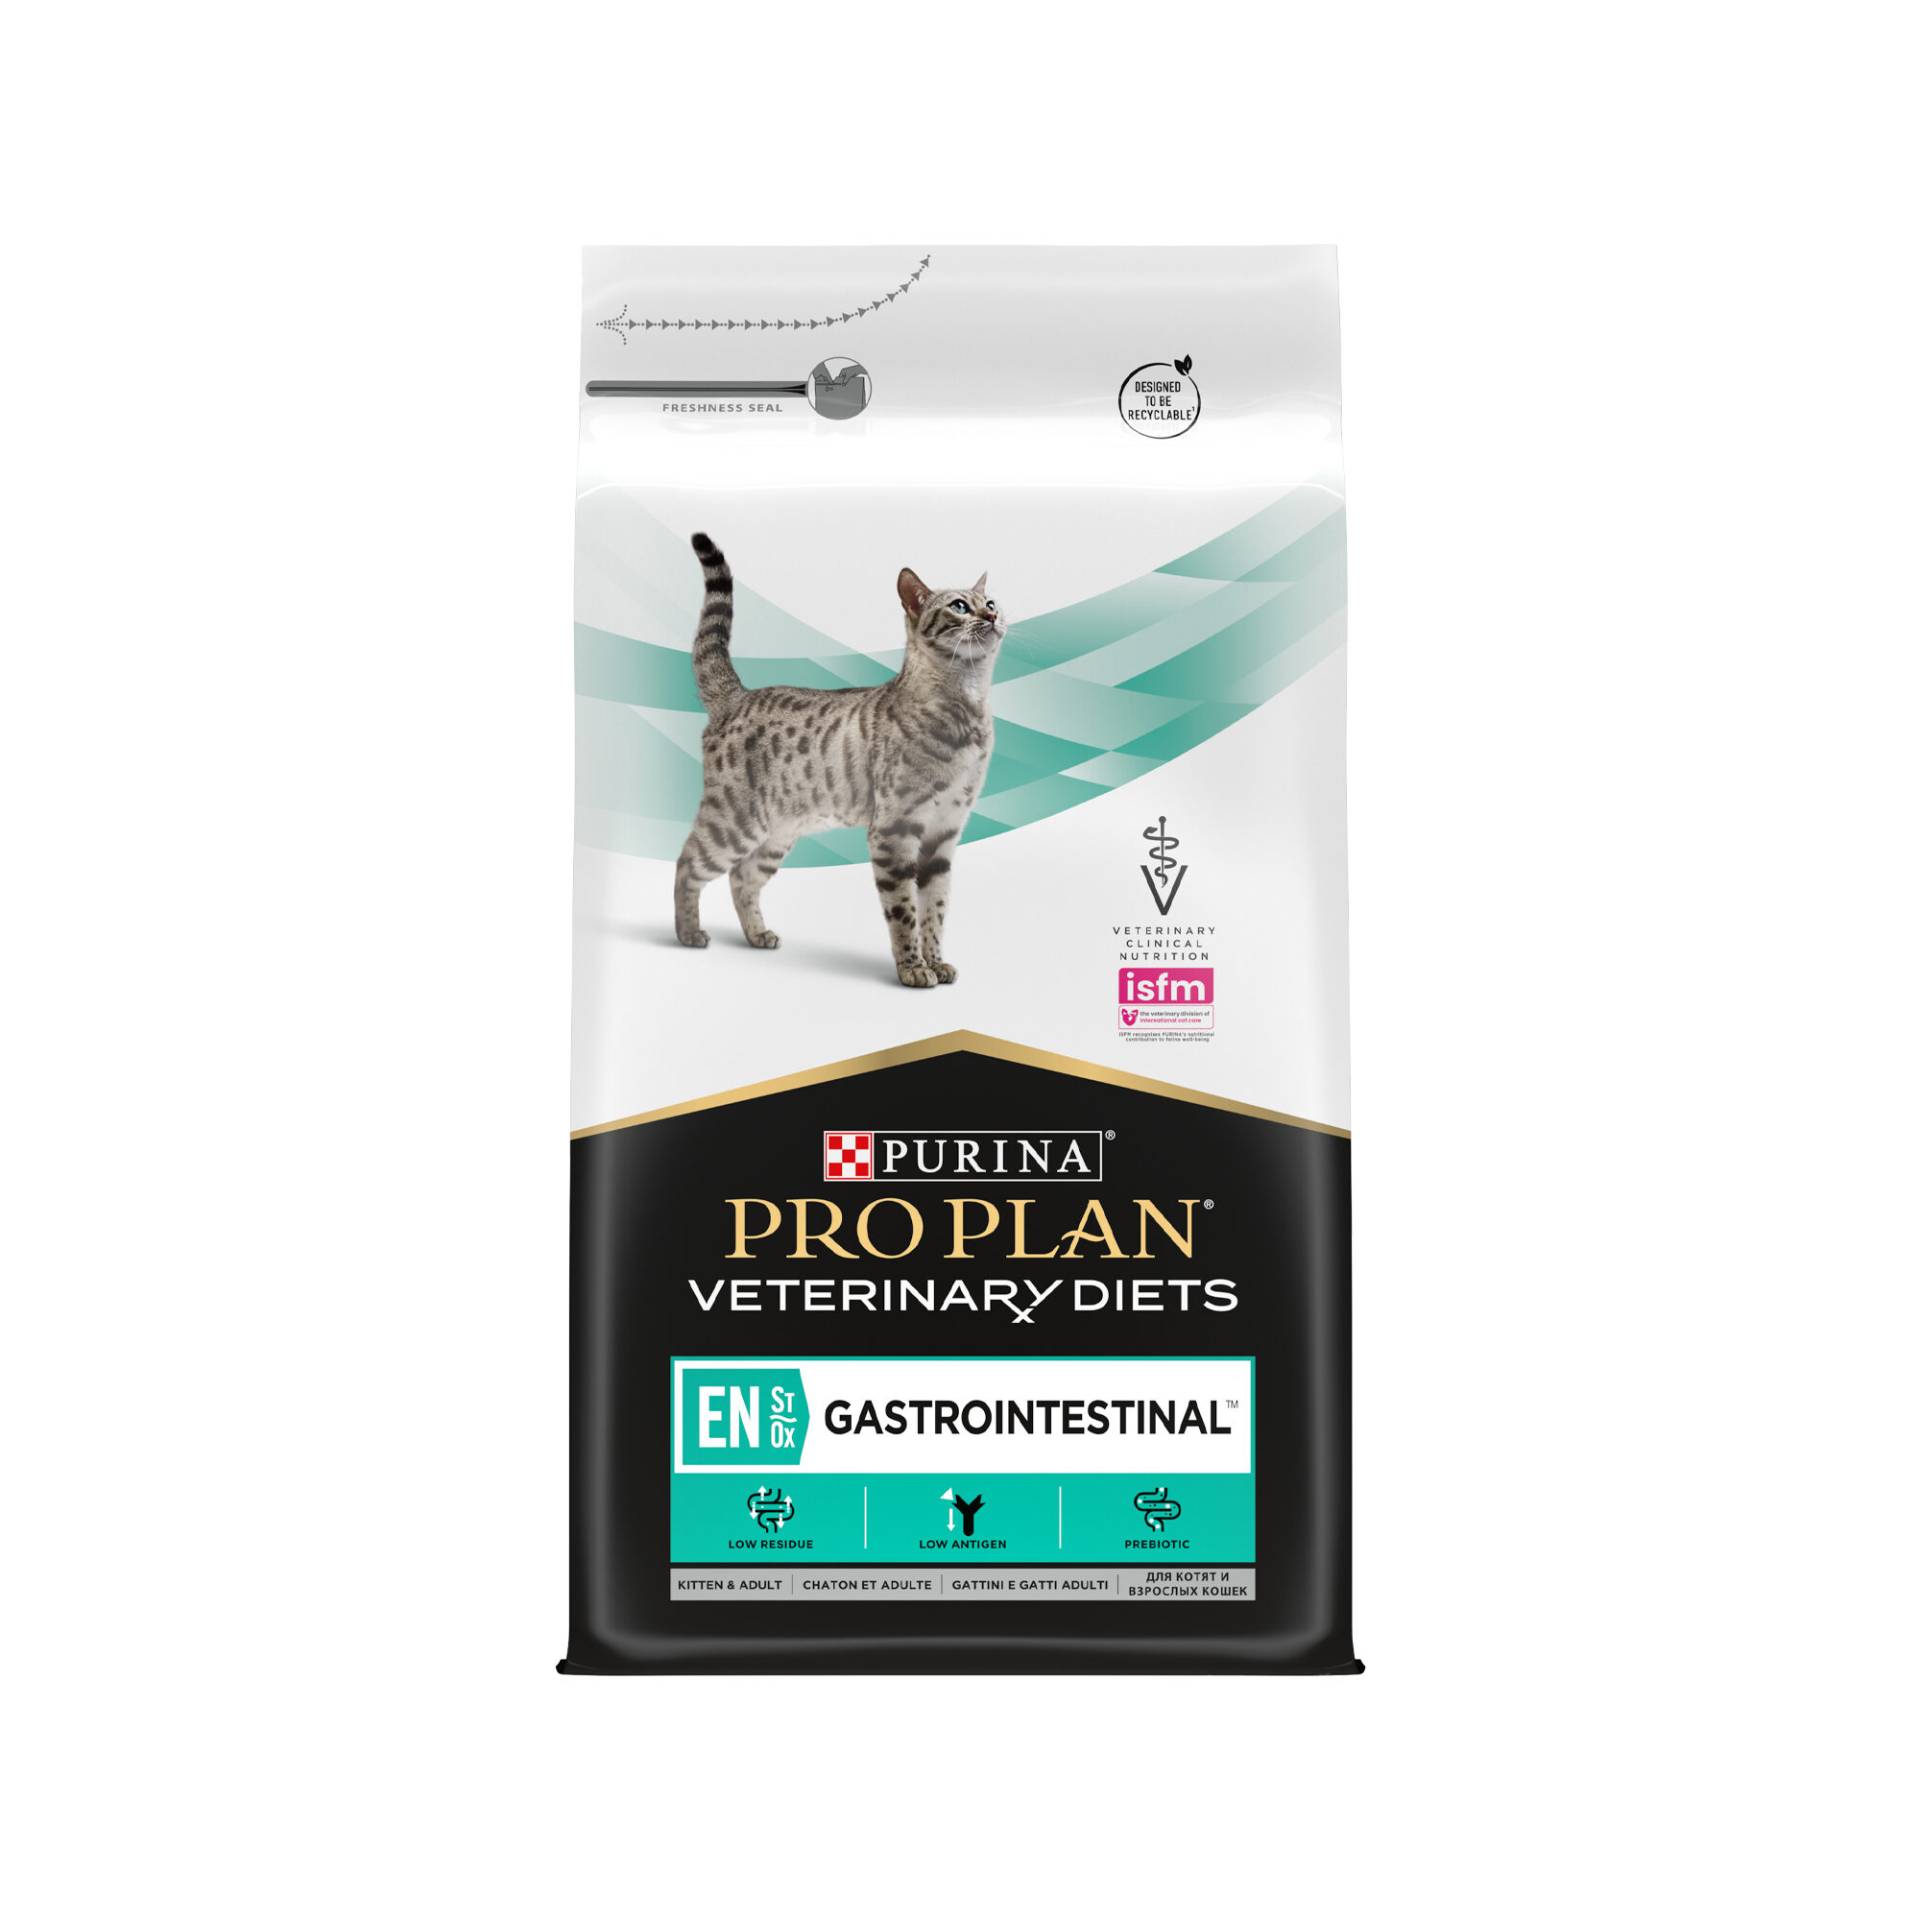 Purina Pro Plan VD EN Gastrointestinal - Katze - 1,5 kg von Purina